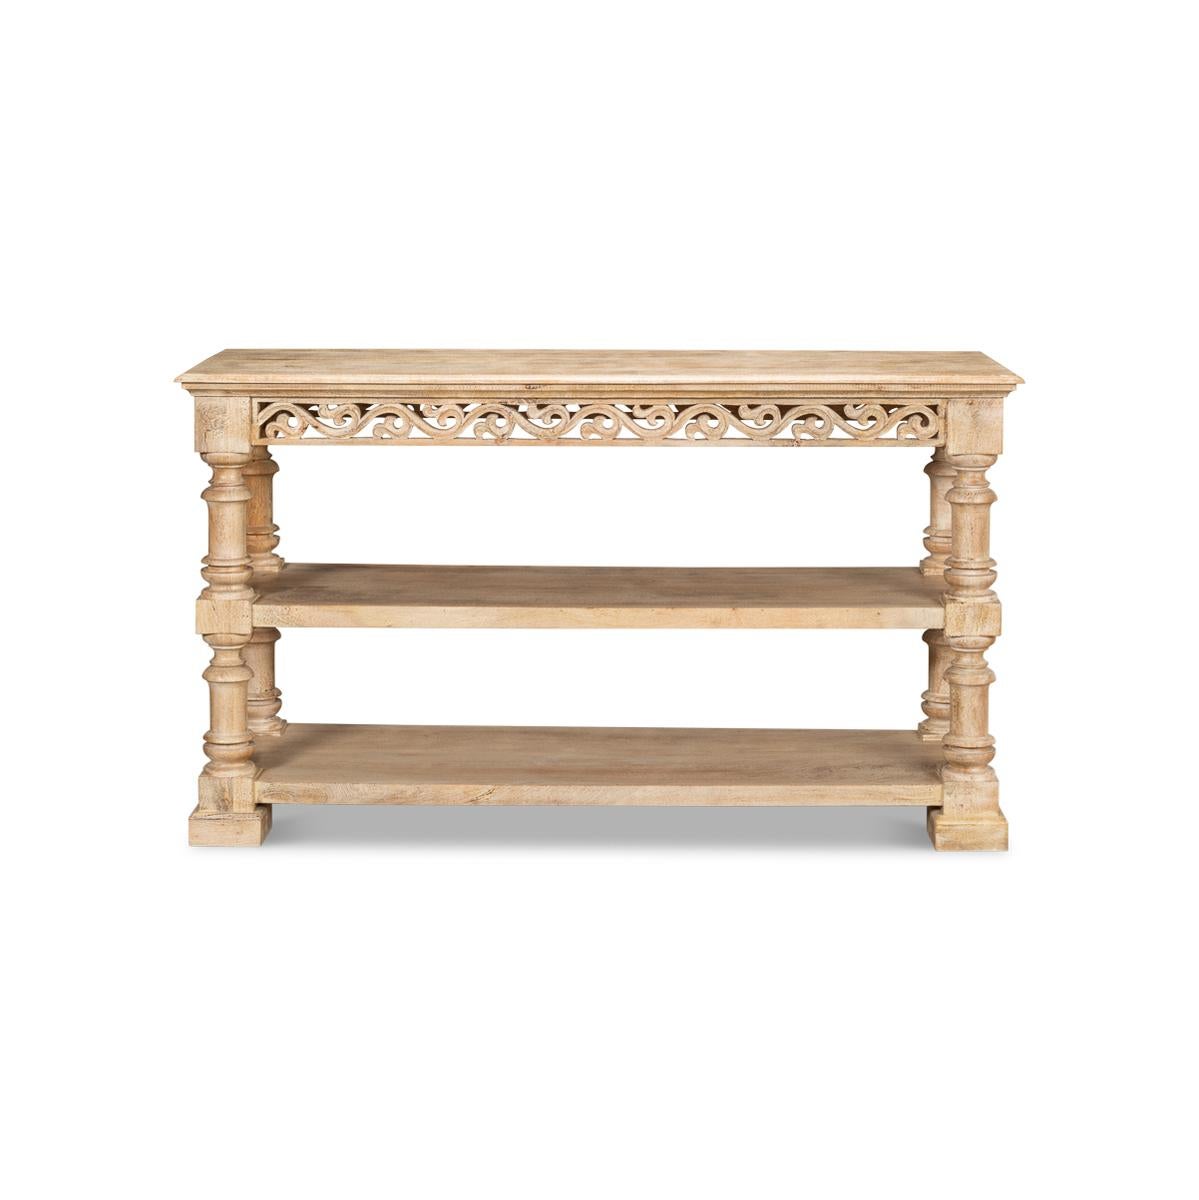 Voici la table console à trois niveaux de la Renaissance italienne, un meuble étonnant qui rehaussera n'importe quelle pièce de votre maison. Fabriquée à partir d'un magnifique bois de manguier, cette table console présente une finition naturelle